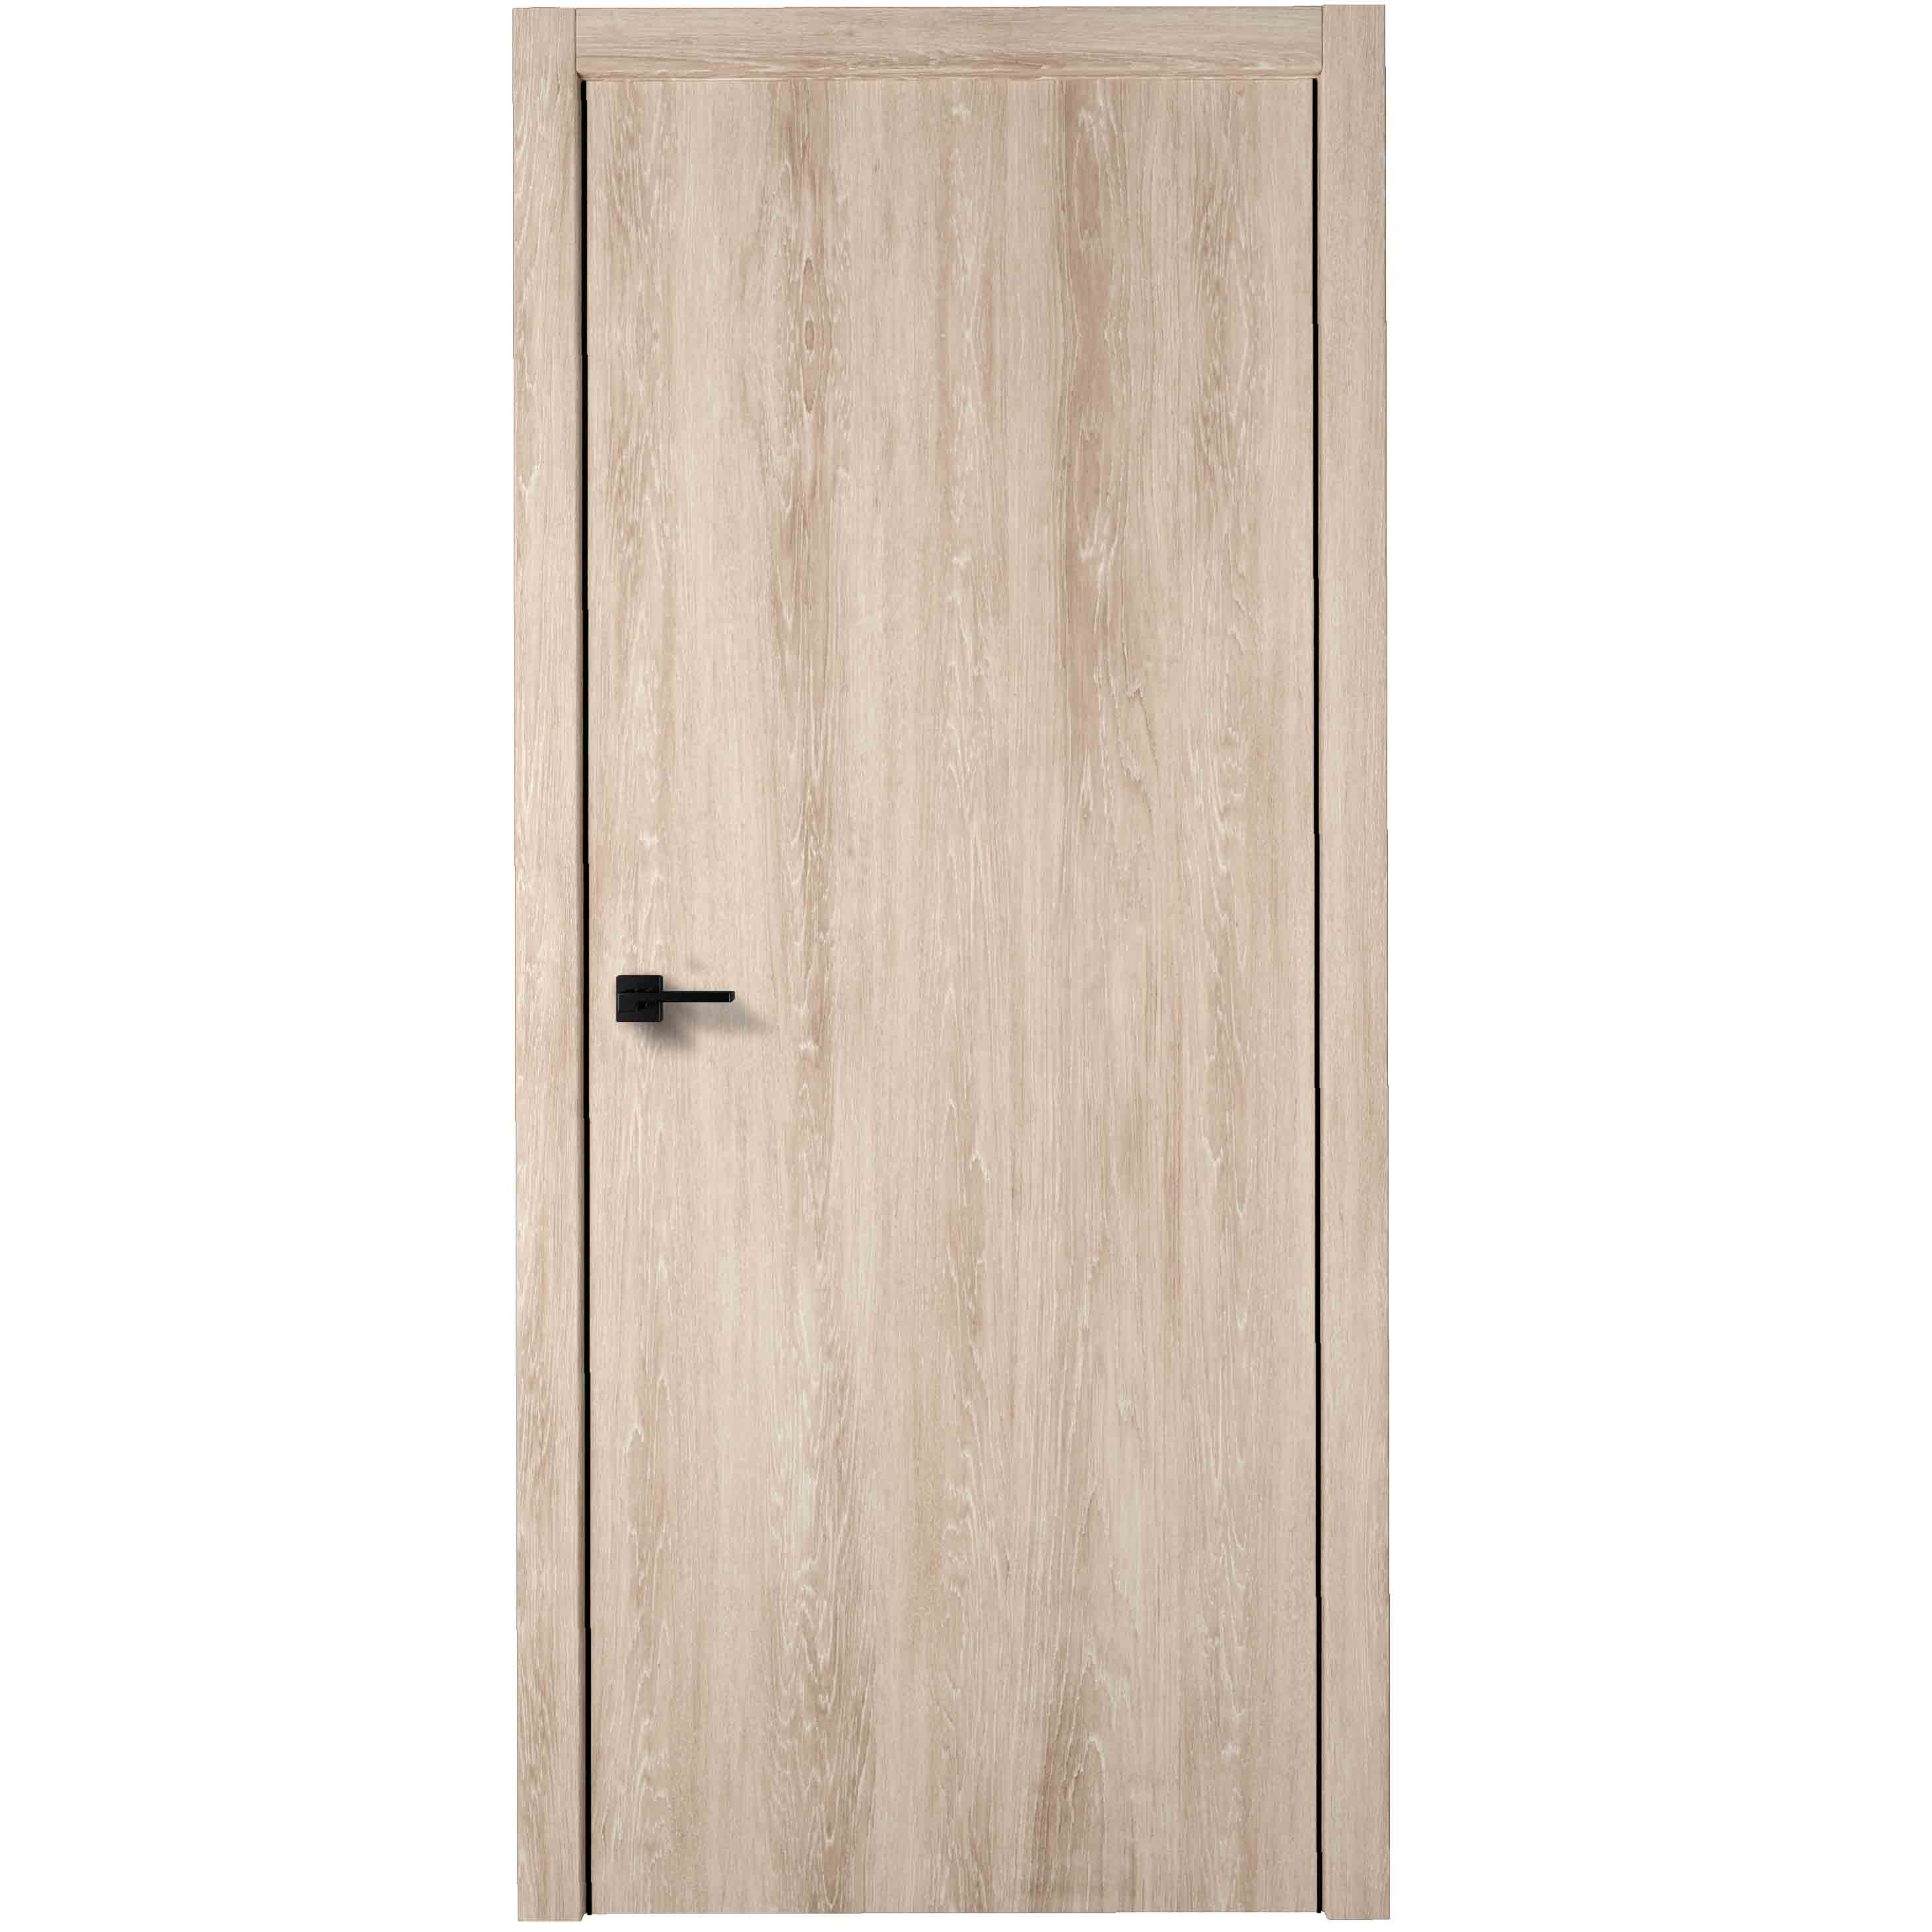 Дверь межкомнатная лофтвуд 2 глухая 80x200 см шпон натуральный цвет дуб американский